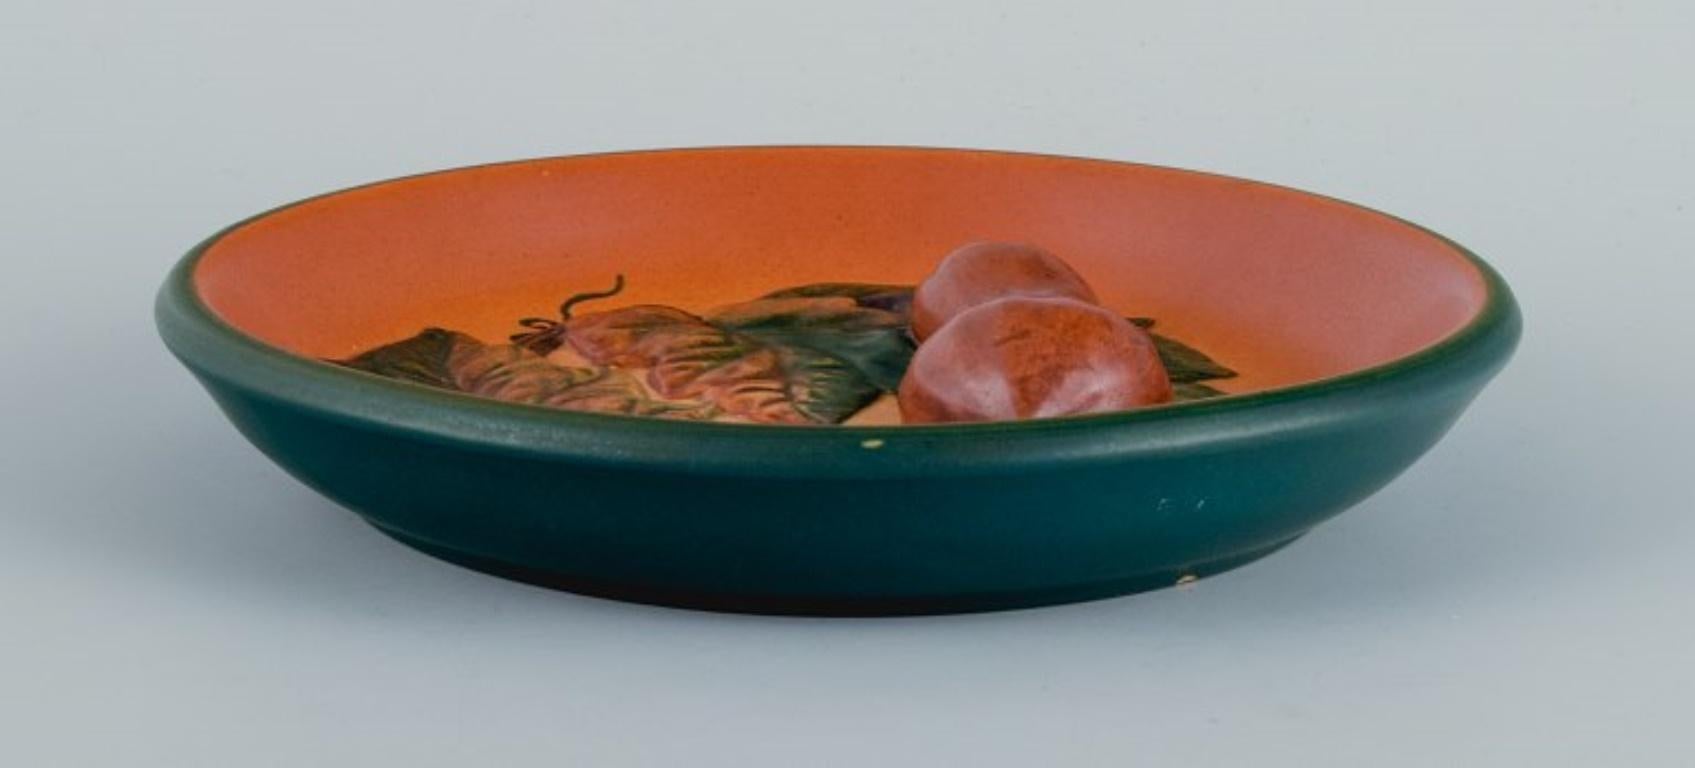 Ipsen's, Danemark. 
Bol en céramique avec des feuilles et des citrouilles, glaçure dans les tons orange-vert.
Modèle 8.
Années 1920/30.
En parfait état.
Marqué
Dimensions : D 17,0 x H 3,0 cm : D 17,0 x H 3,0 cm.